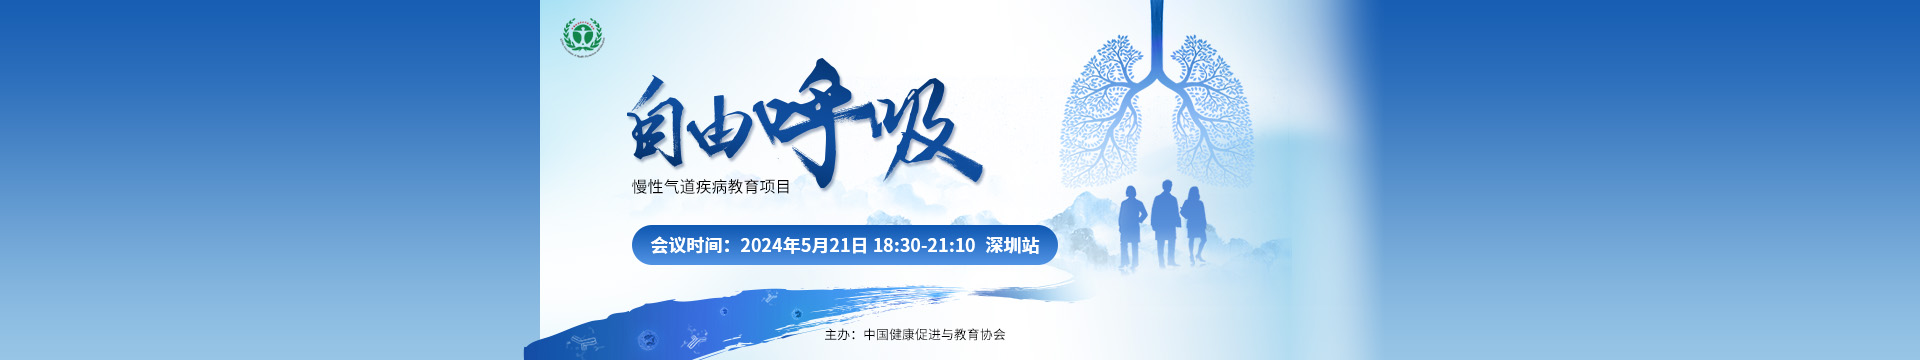 自由呼吸-慢性气道疾病教育项目-深圳站